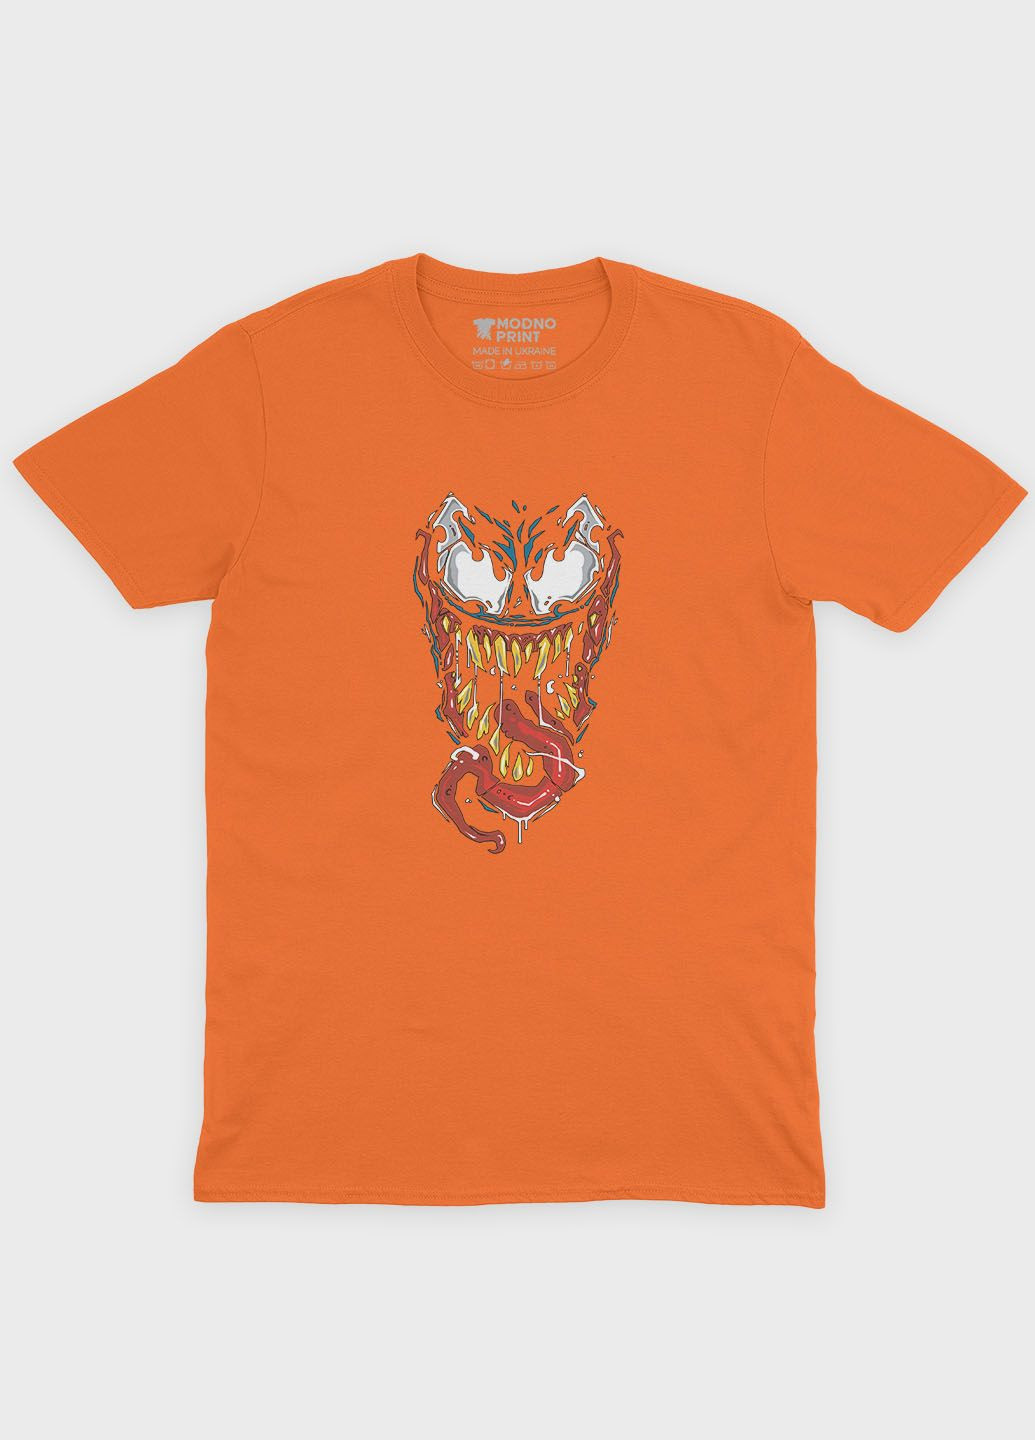 Оранжевая демисезонная футболка для девочки с принтом супервора - веном (ts001-1-ora-006-013-030-g) Modno